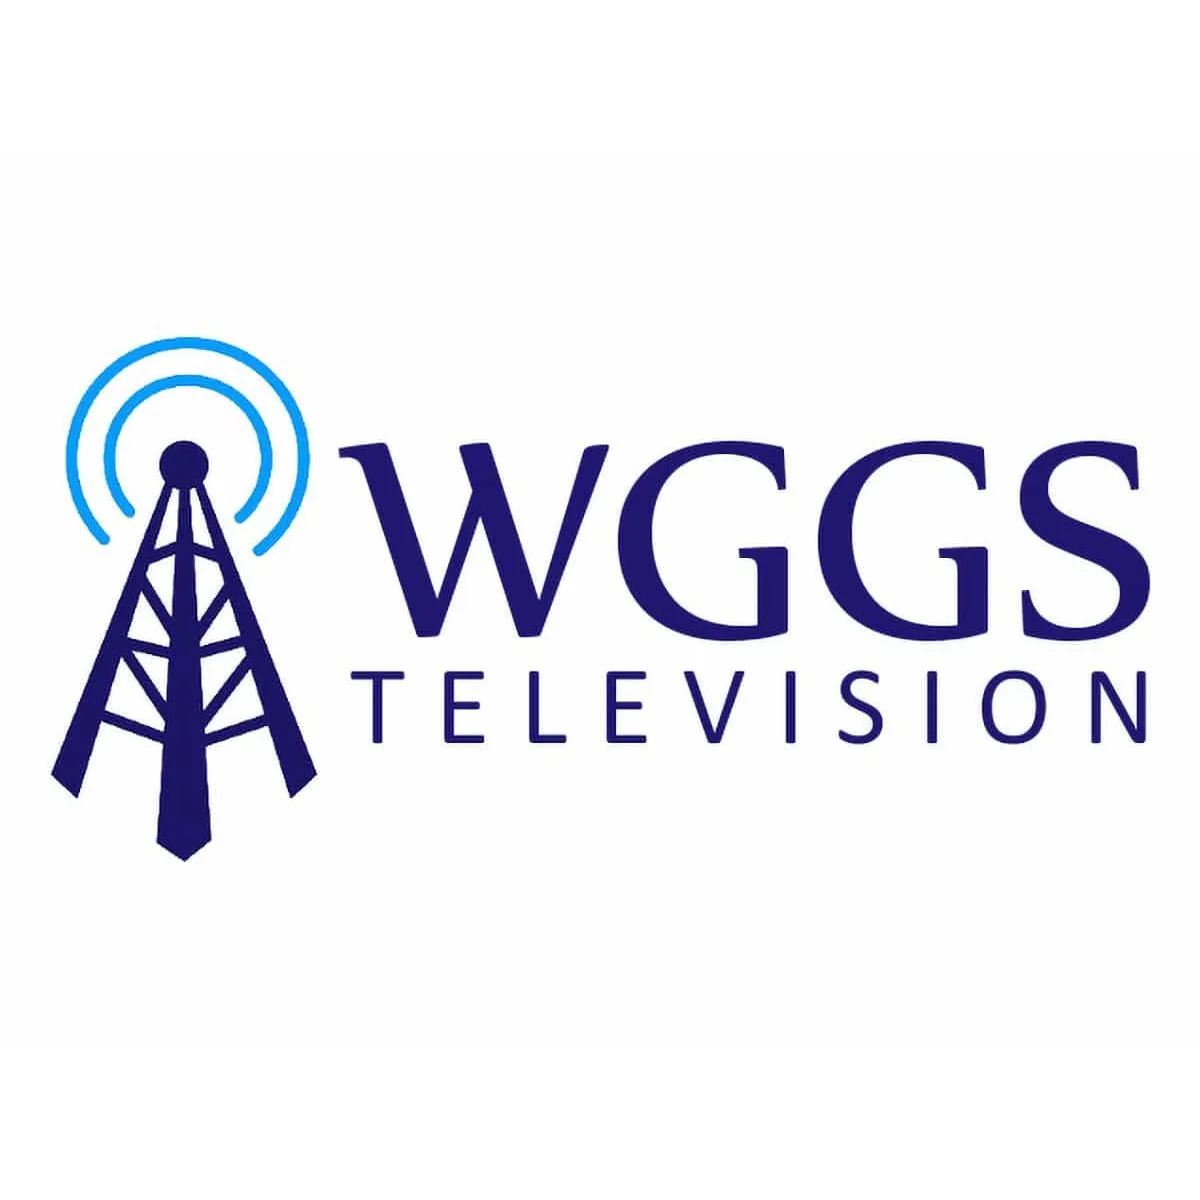 WGGS TV